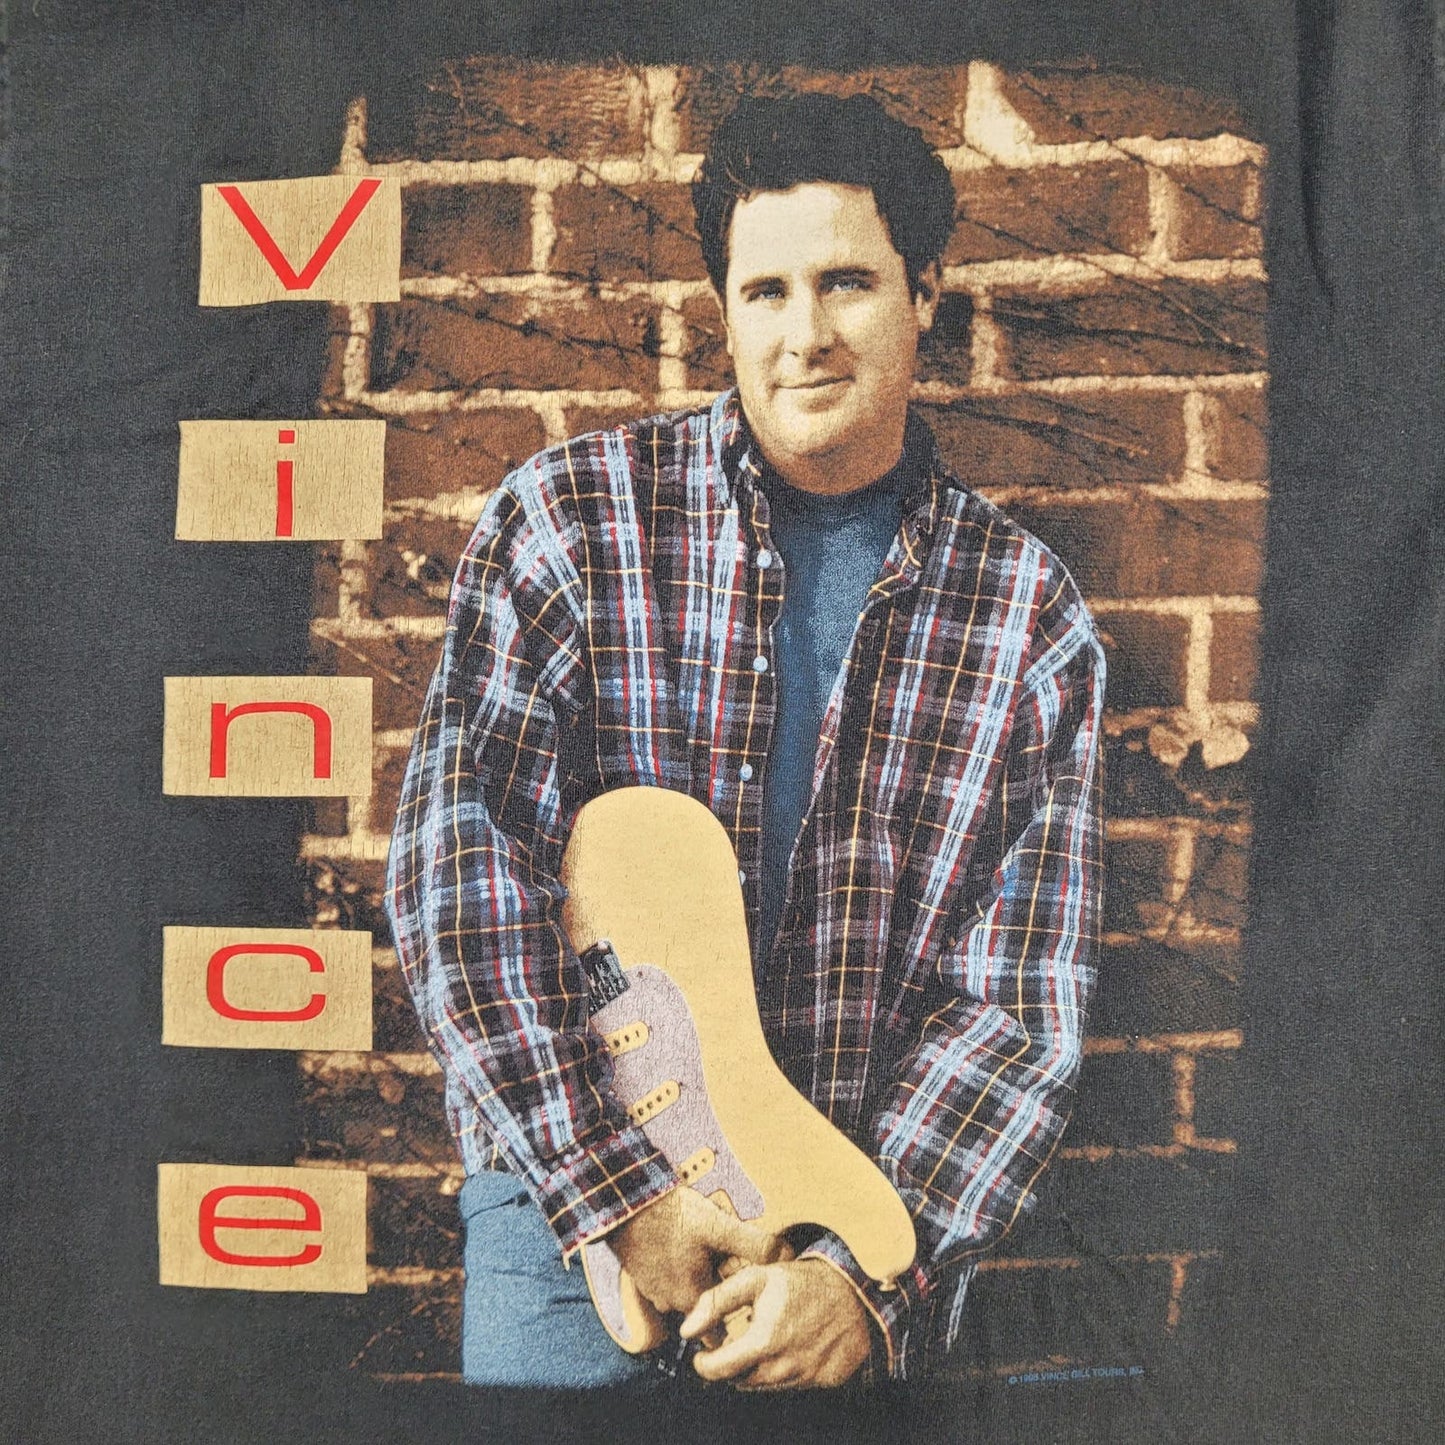 1995 Vince Gill Tour Shirt L